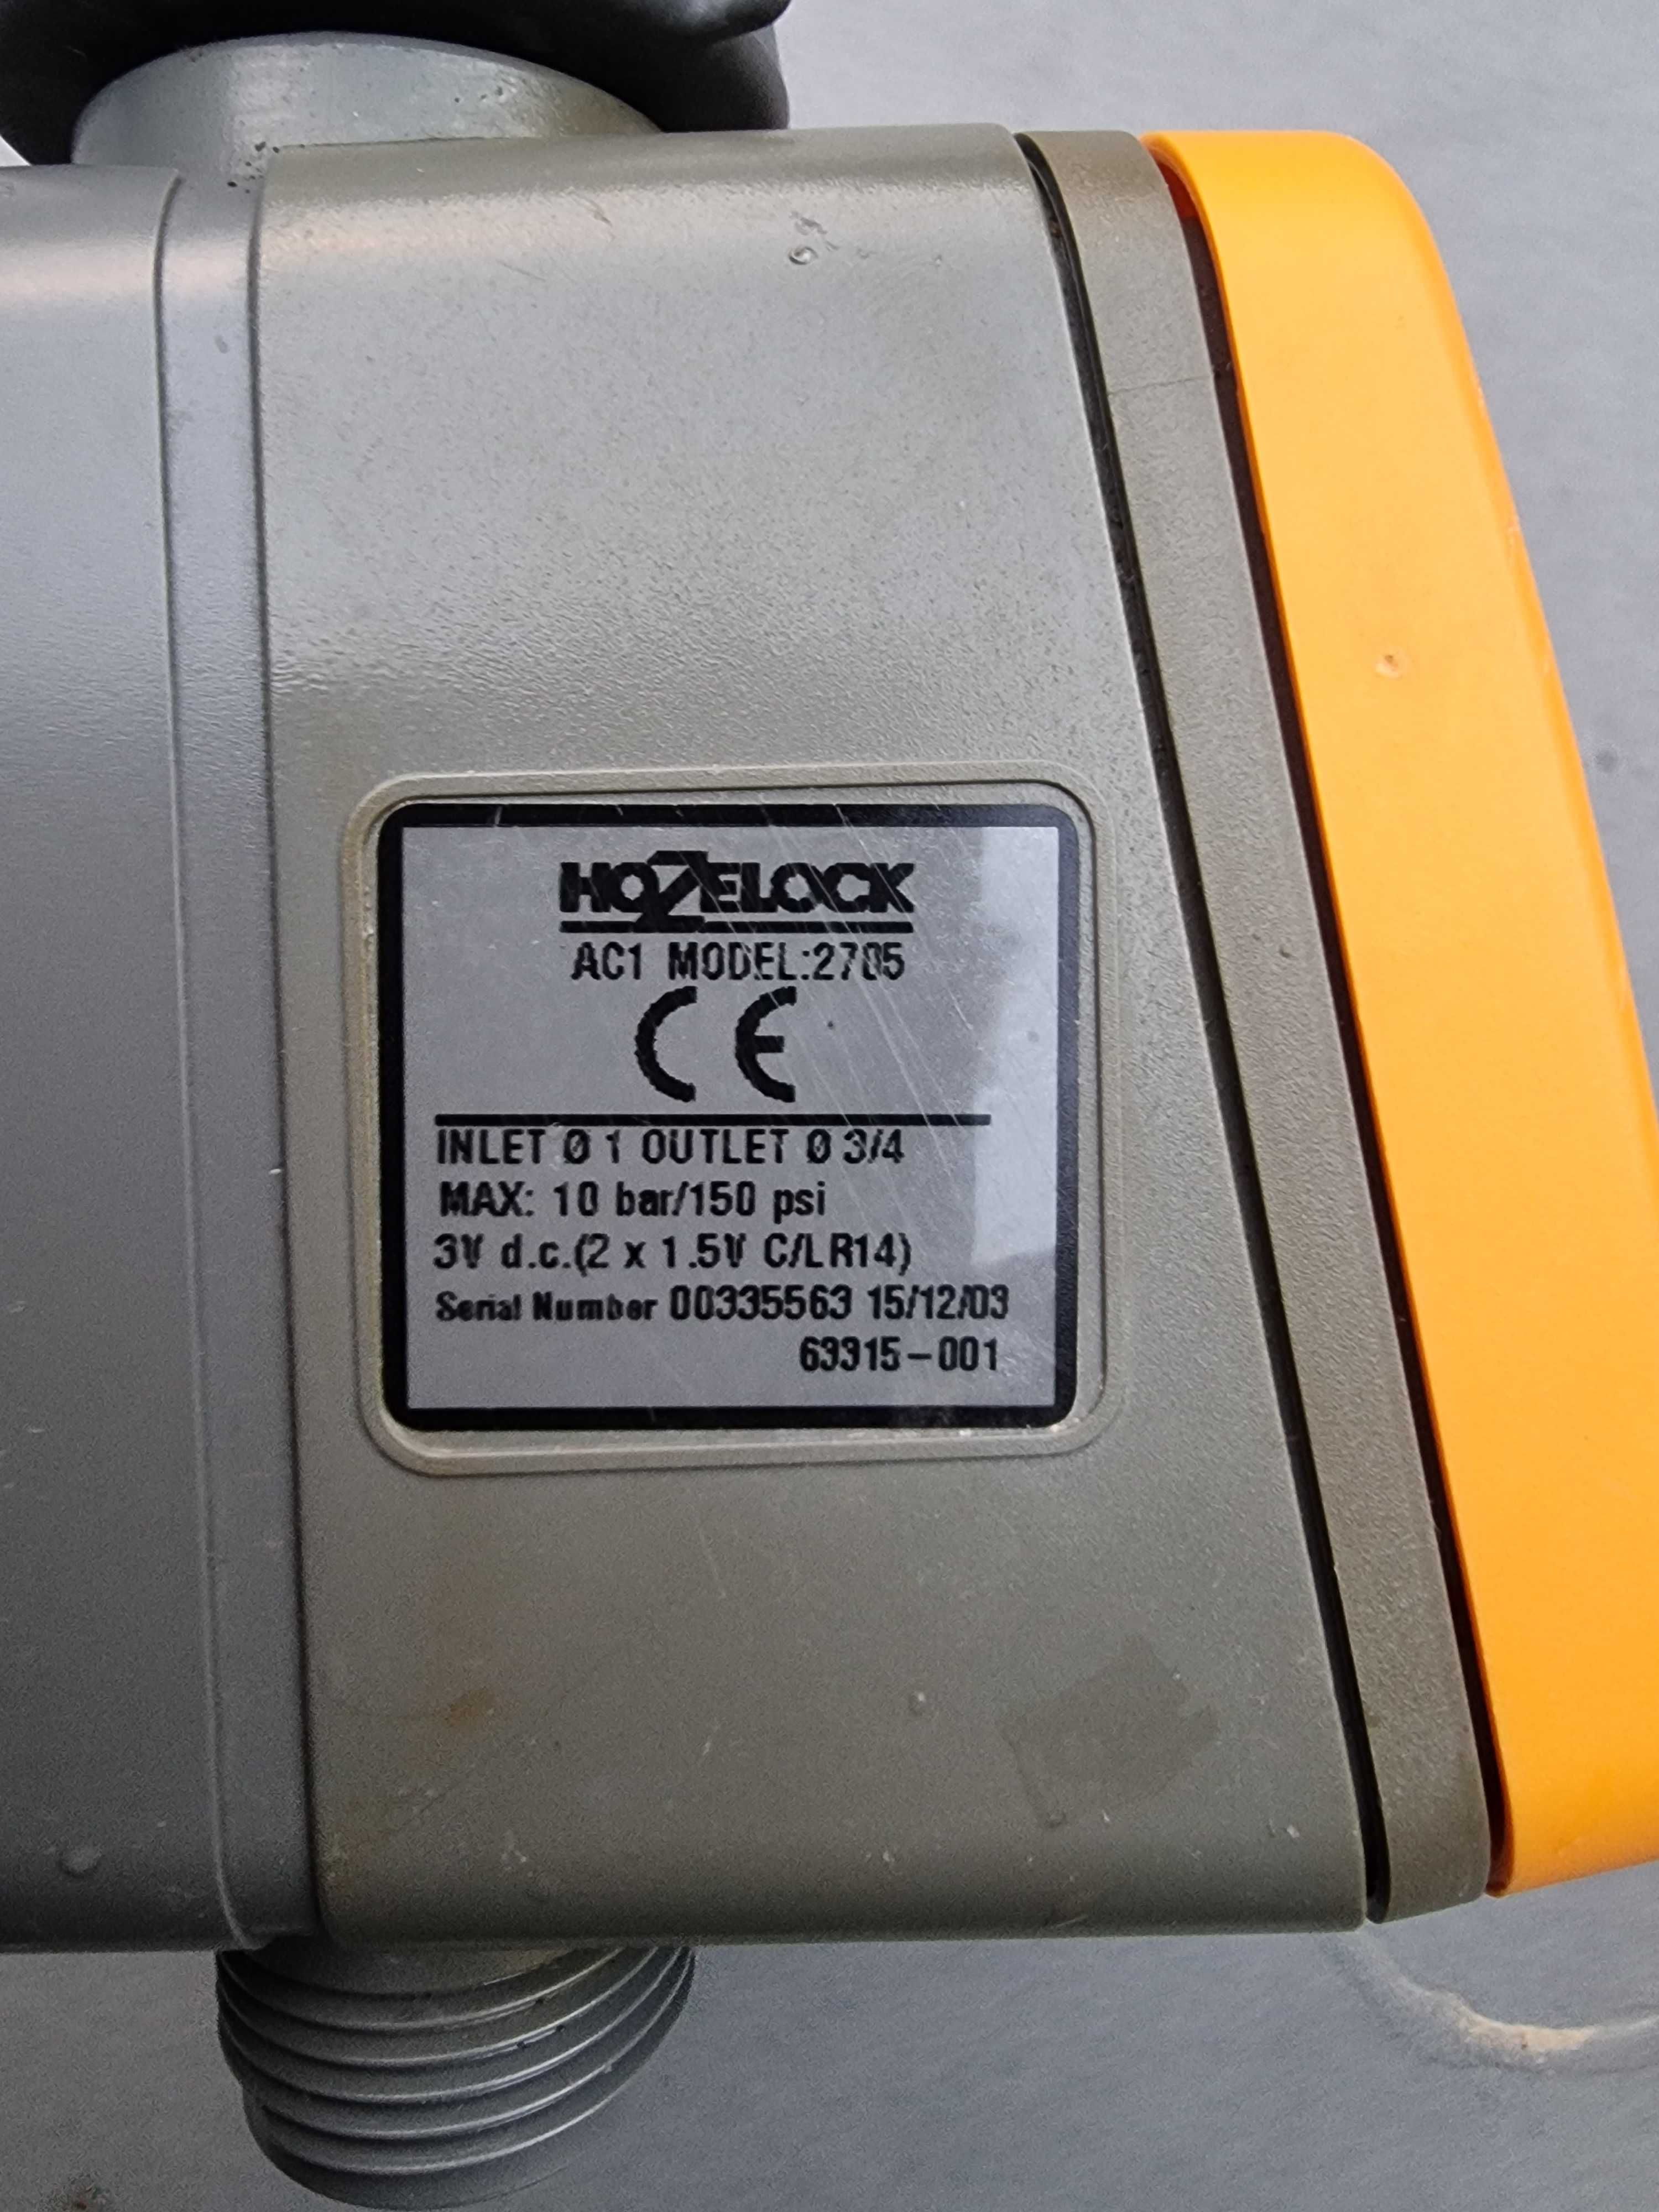 Aspersor /Senzor De Control Plus, Hozelock AC1